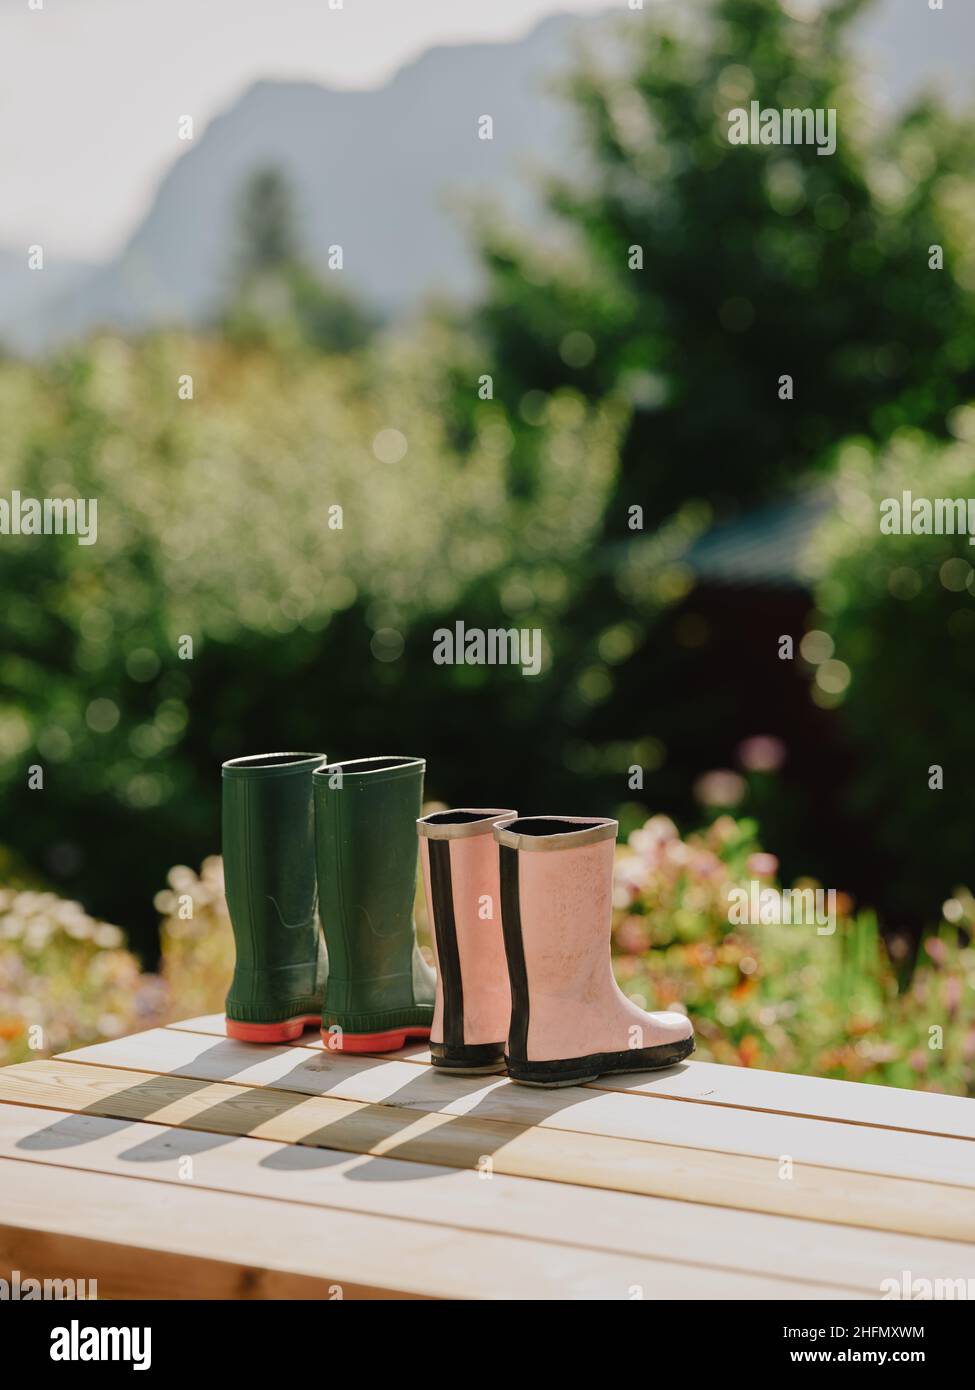 Su jardín y sus botas wellington secado en el sol de verano temprano en la mesa del jardín - pareja de wellies rosa verde jubilado estilo de vida de jubilación Foto de stock